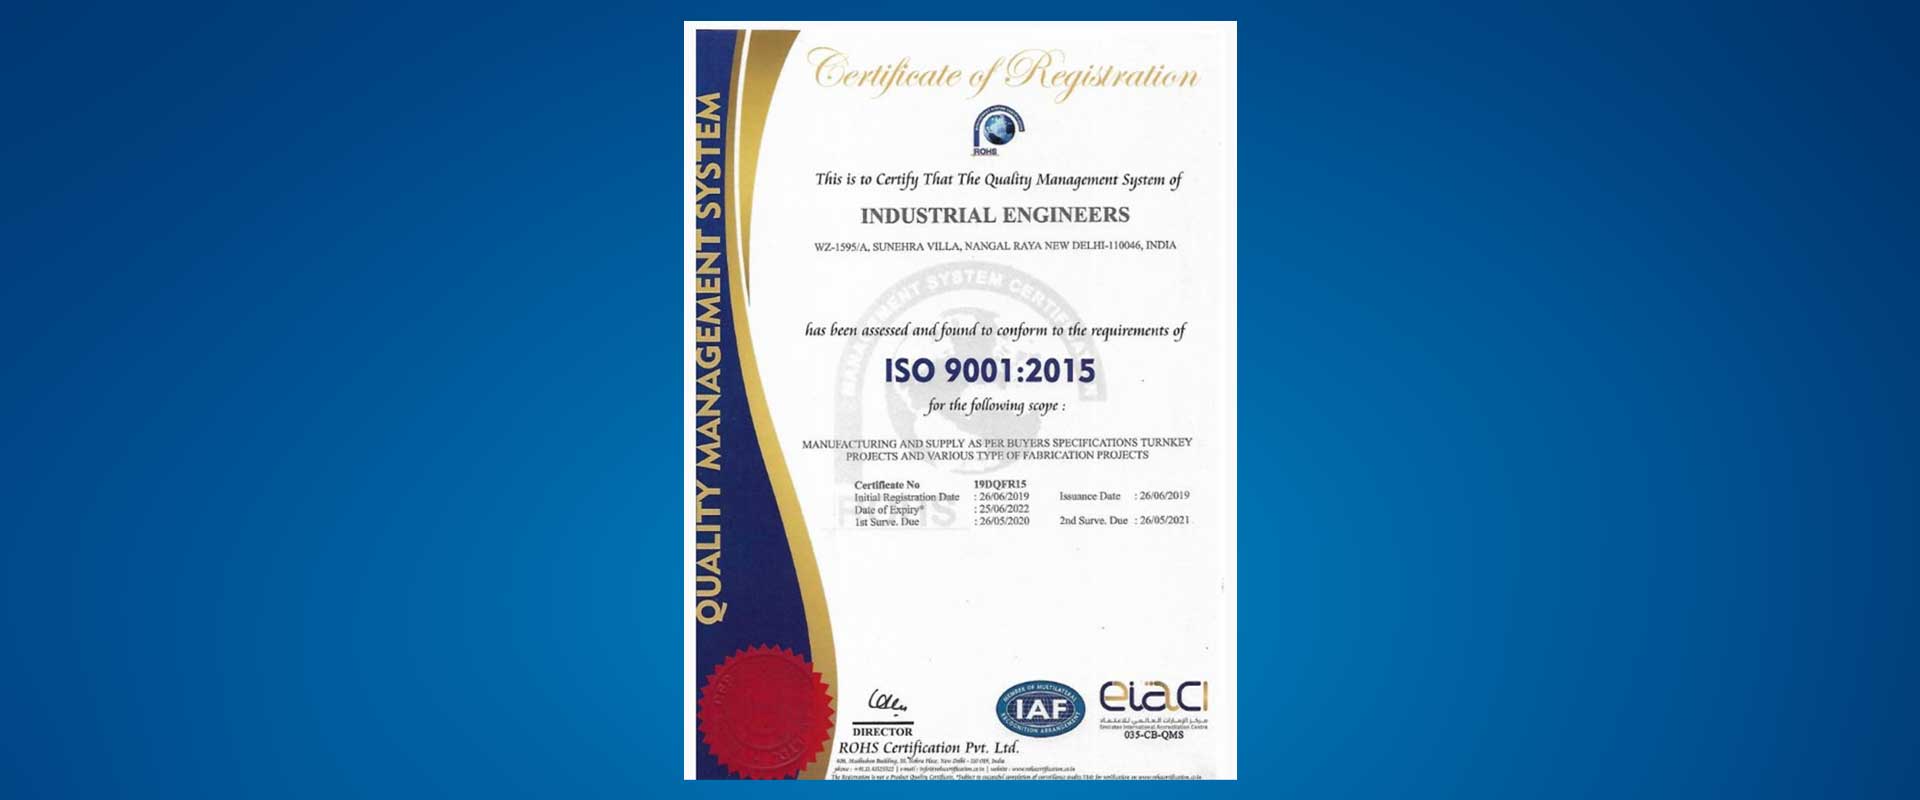 Industrial Engineers Certificate